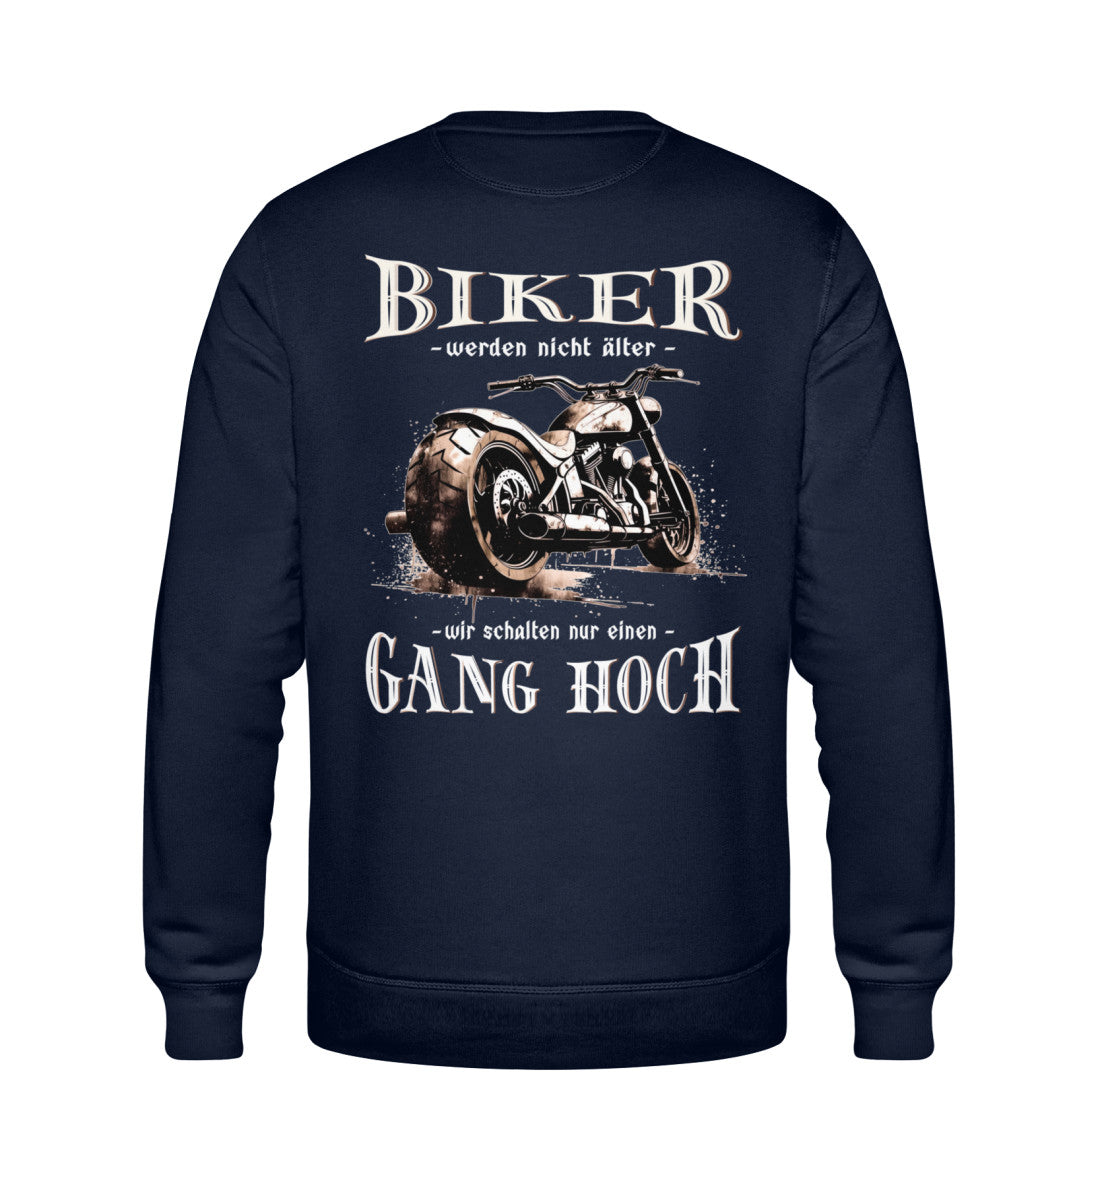 Ein Biker Sweatshirt für Motorradfahrer von Wingbikers mit dem Aufdruck, Biker werden nicht älter - Wir schalten nur einen Gang hoch! mit Back Print, in navy blau.